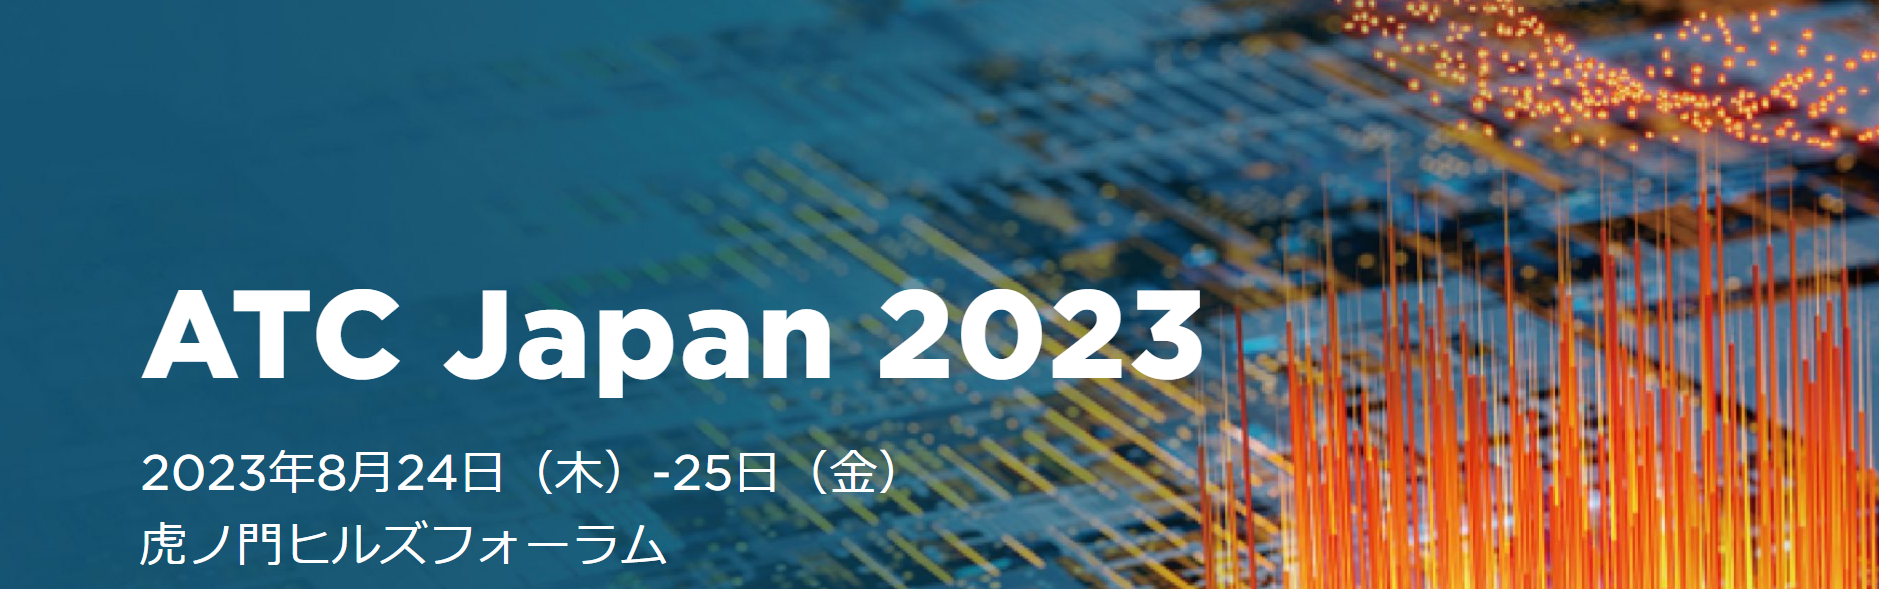 ATC Japan 2023